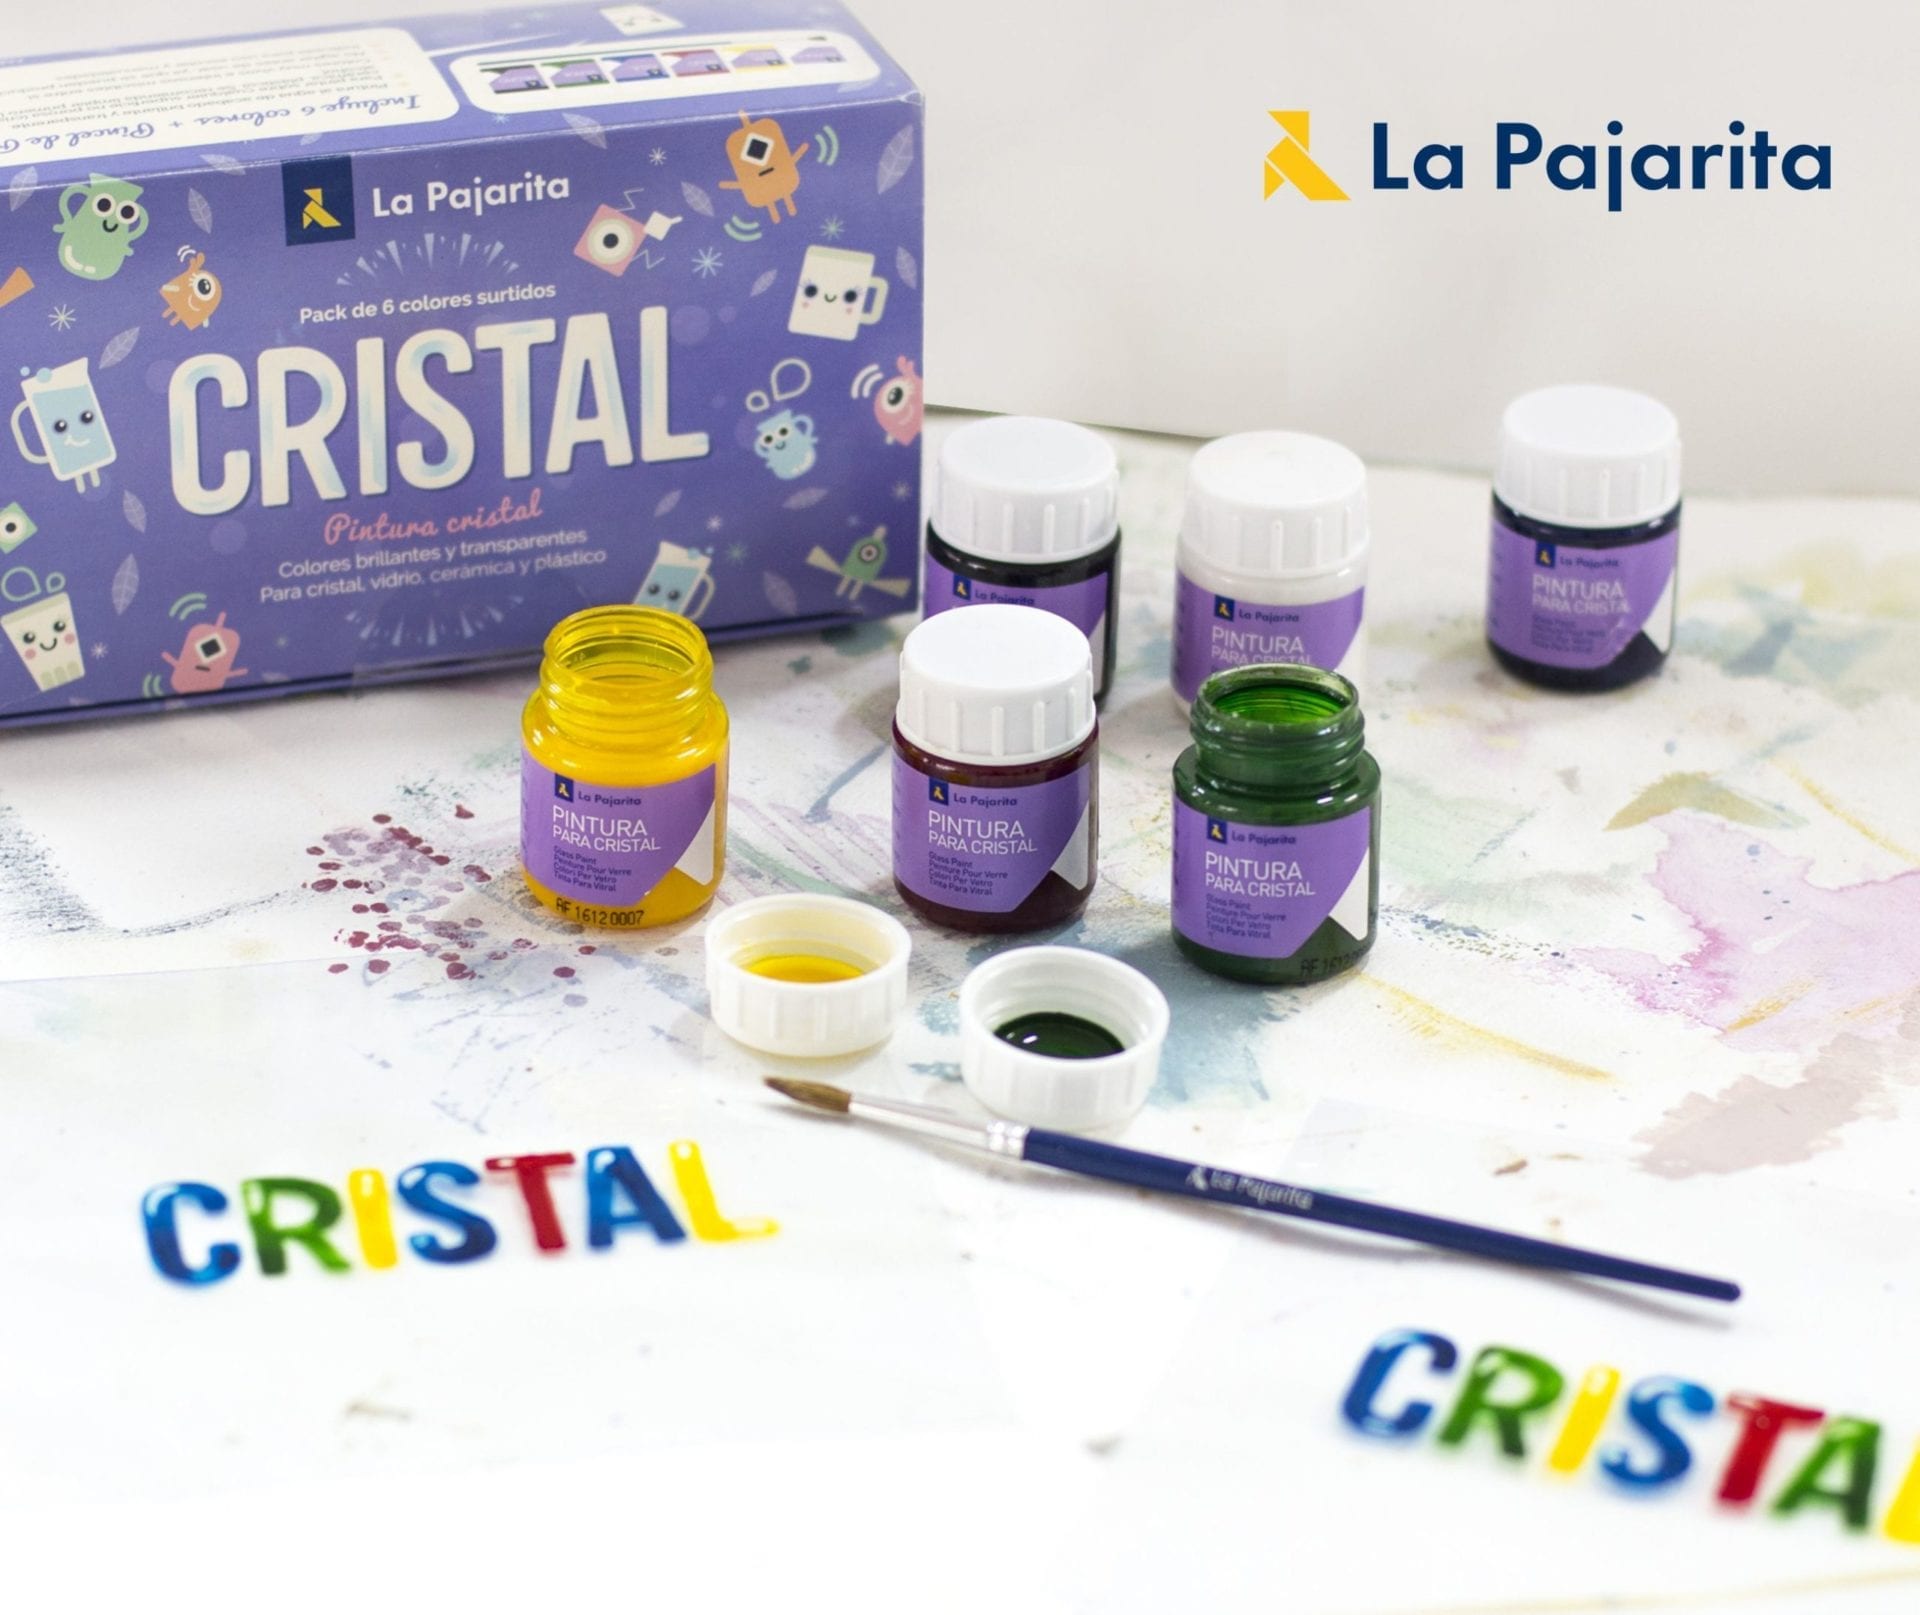 Crystal water assortment - La Pajarita